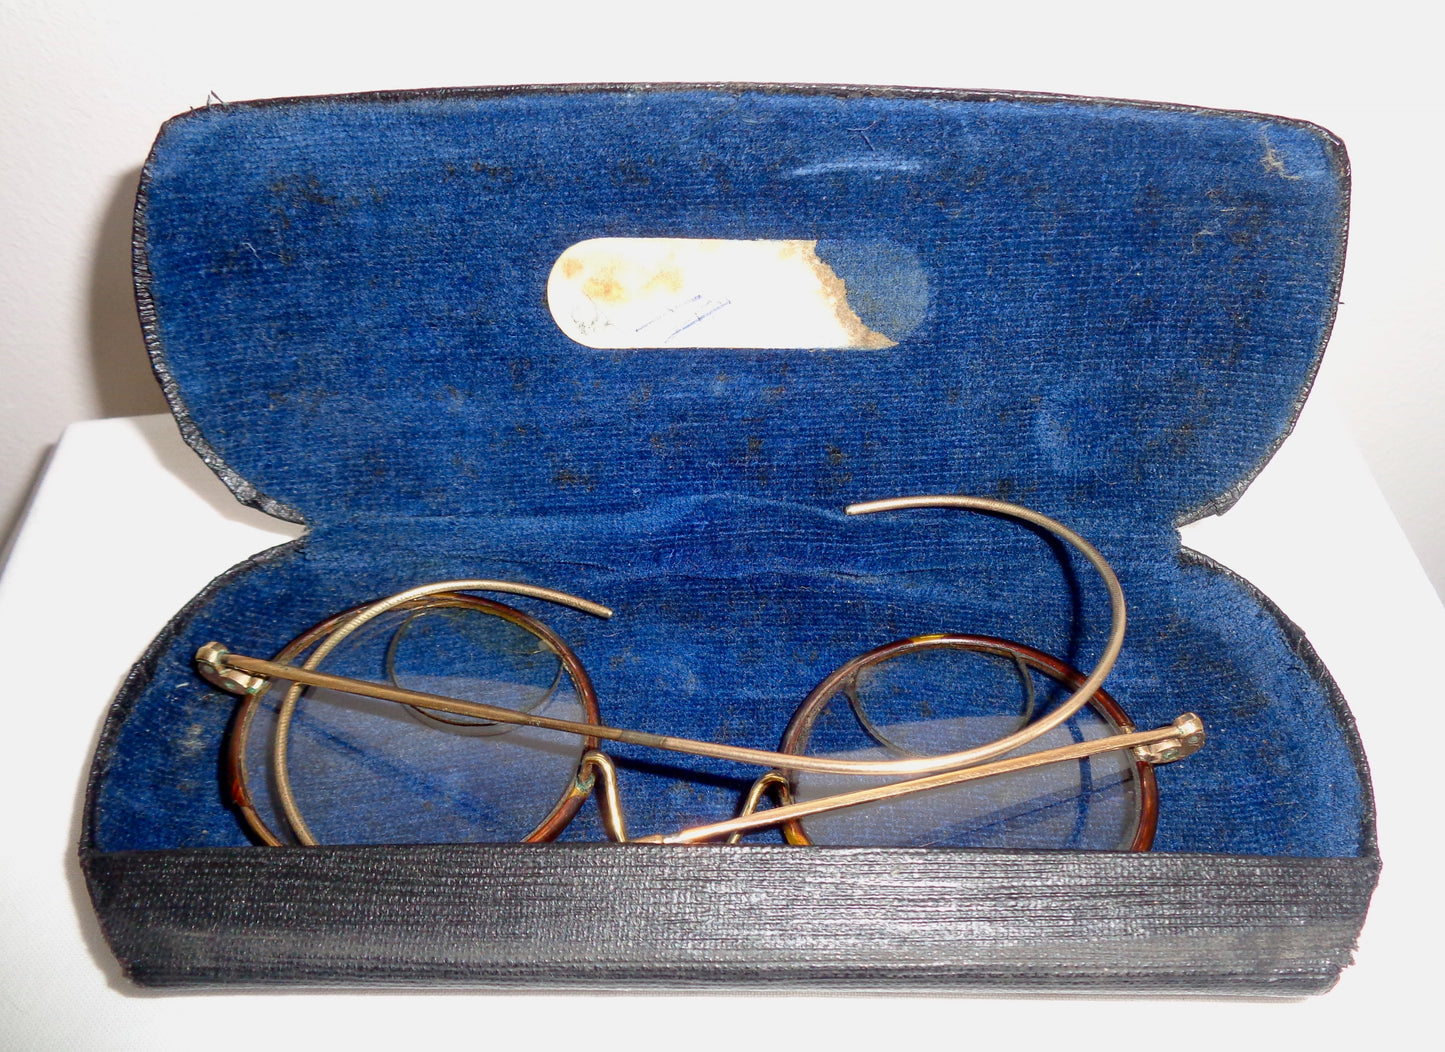 Antique Windsor Round Bifocal Glasses In Their Original Case